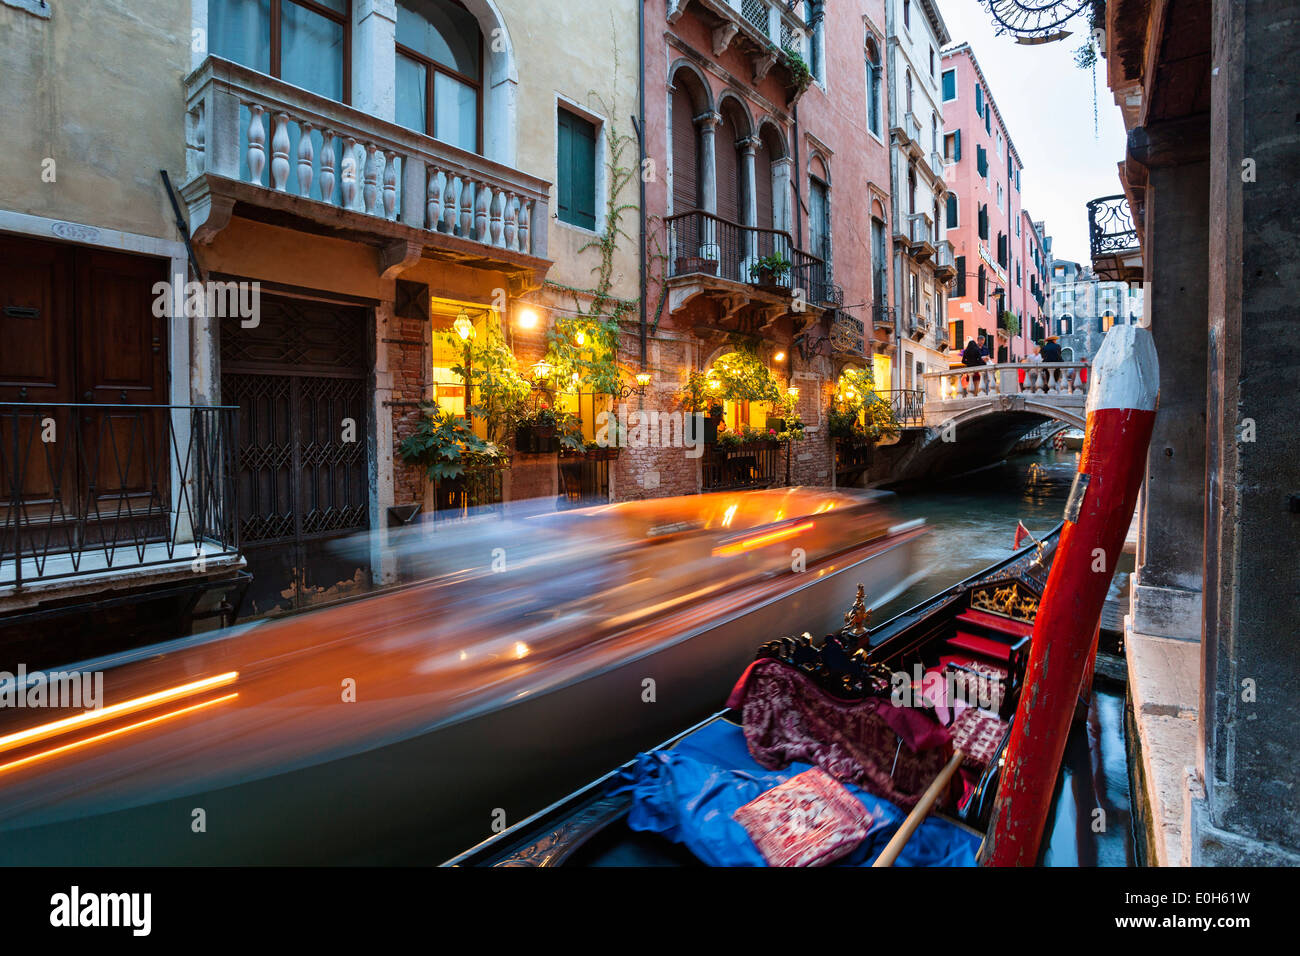 Gondola and restaurant, canal, Venice, Venetia, Italy, Europe Stock Photo